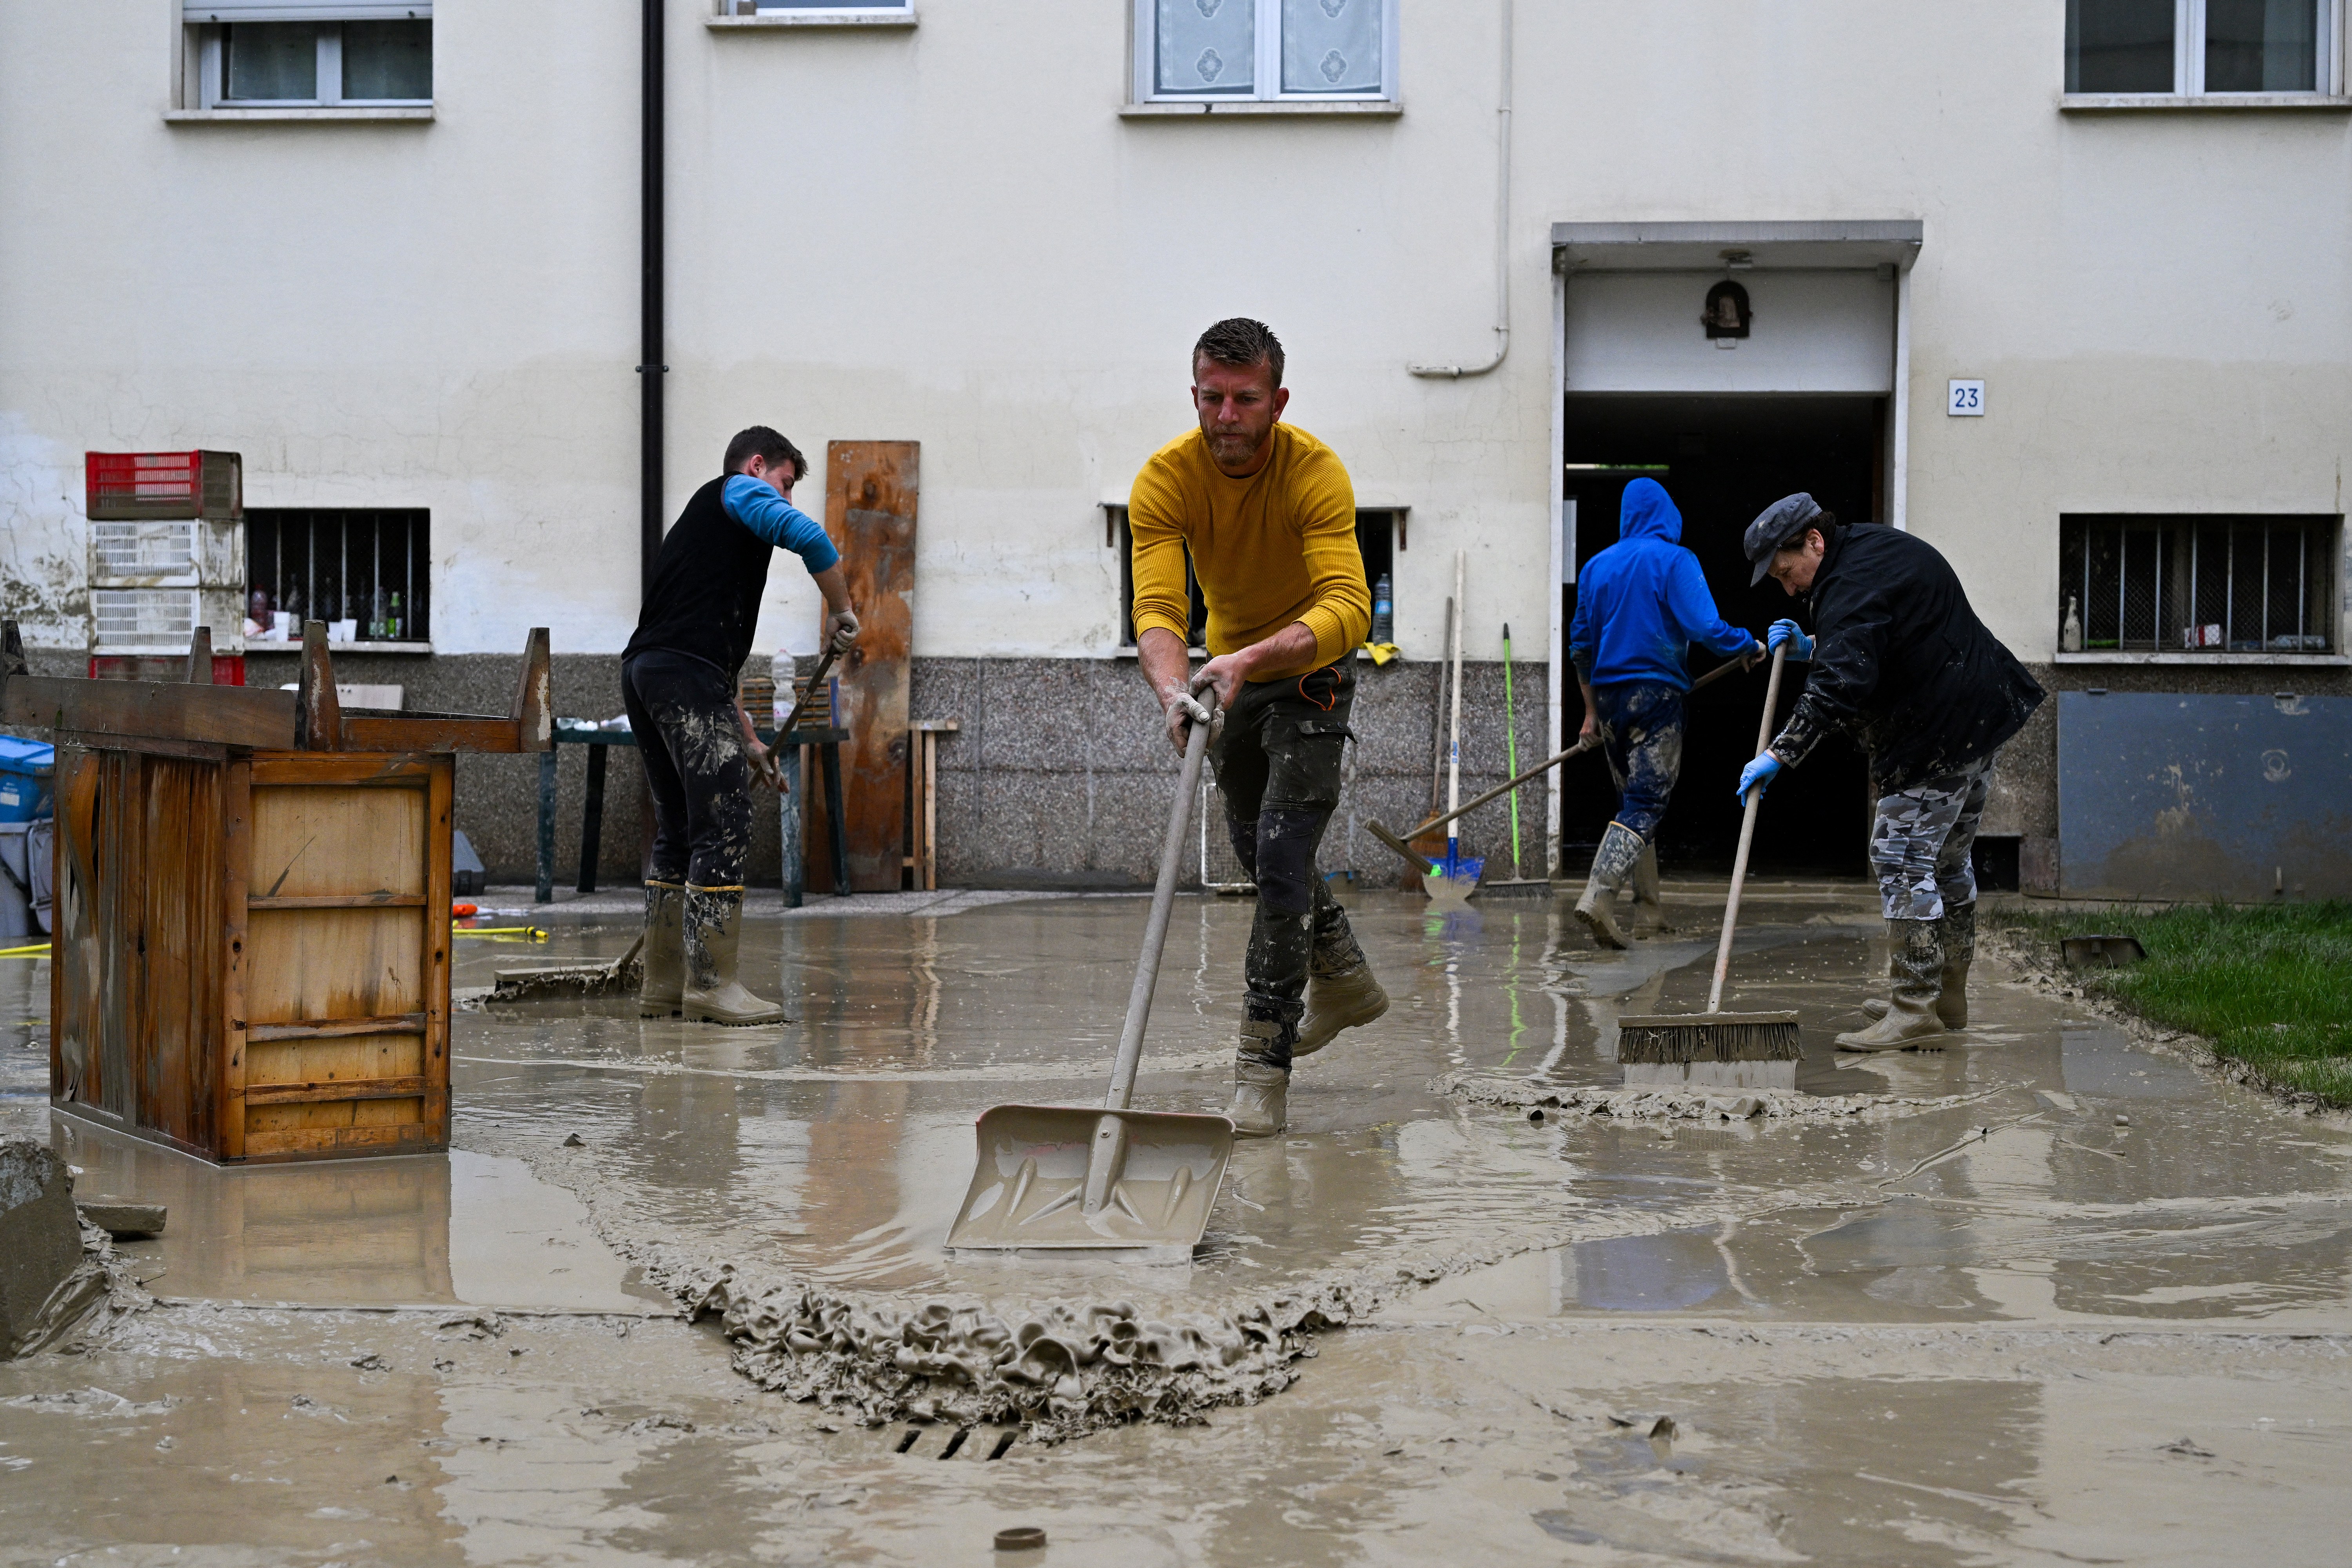 Voluntarios realizan tareas de limpieza tras las inundaciones (Andreas SOLARO / AFP)